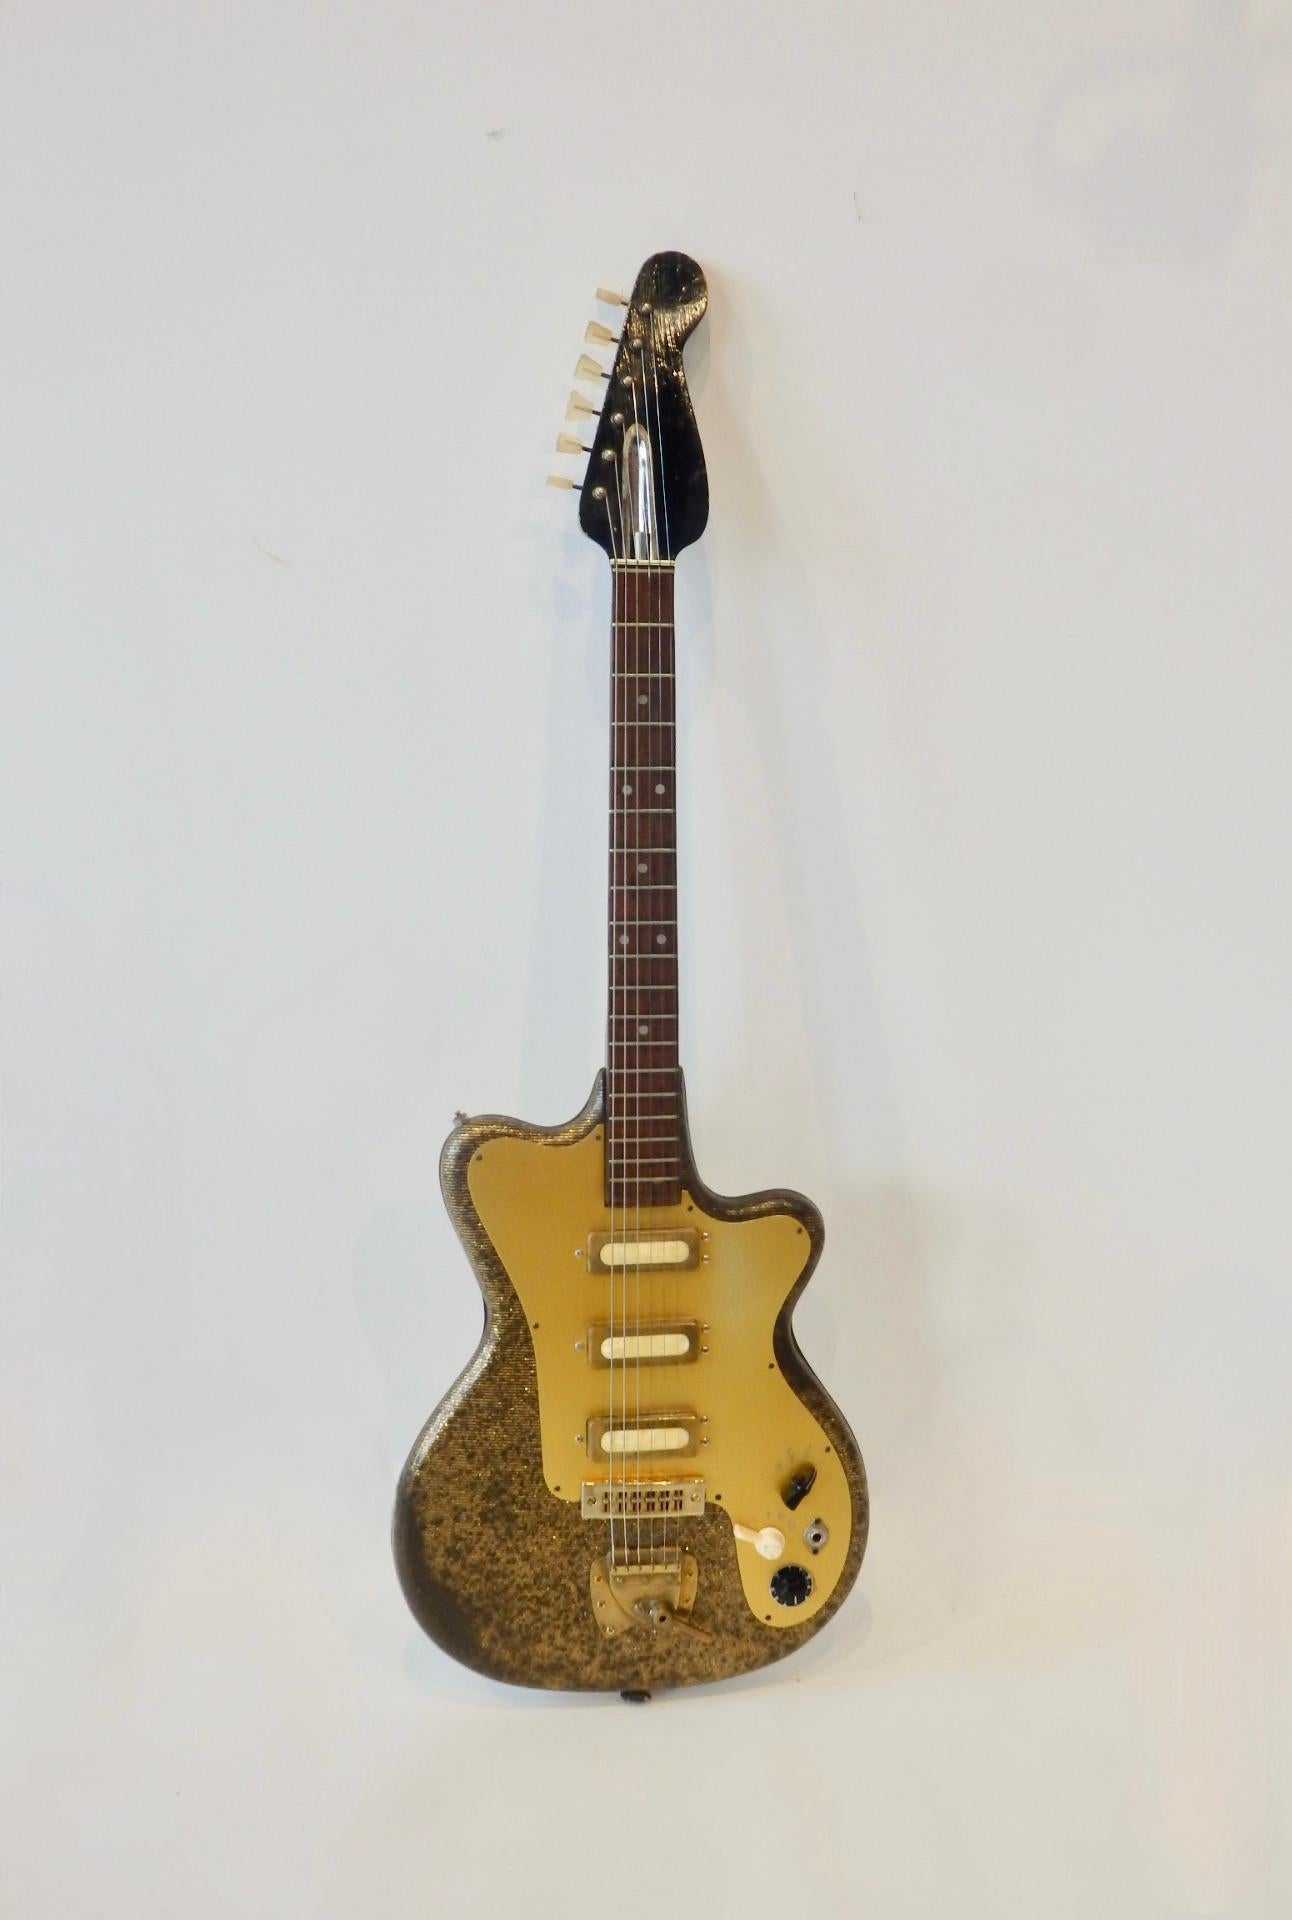 Frühe und seltene deutsche Solidbody-E-Gitarre. Hergestellt von Fasan guitars . Der Körper ist mit einem goldenen Metallplättchen umhüllt  mit schwarzer Linienabdeckung. Eine interessante frühe Gitarre, die sehr geliebt wurde und noch einiges zu